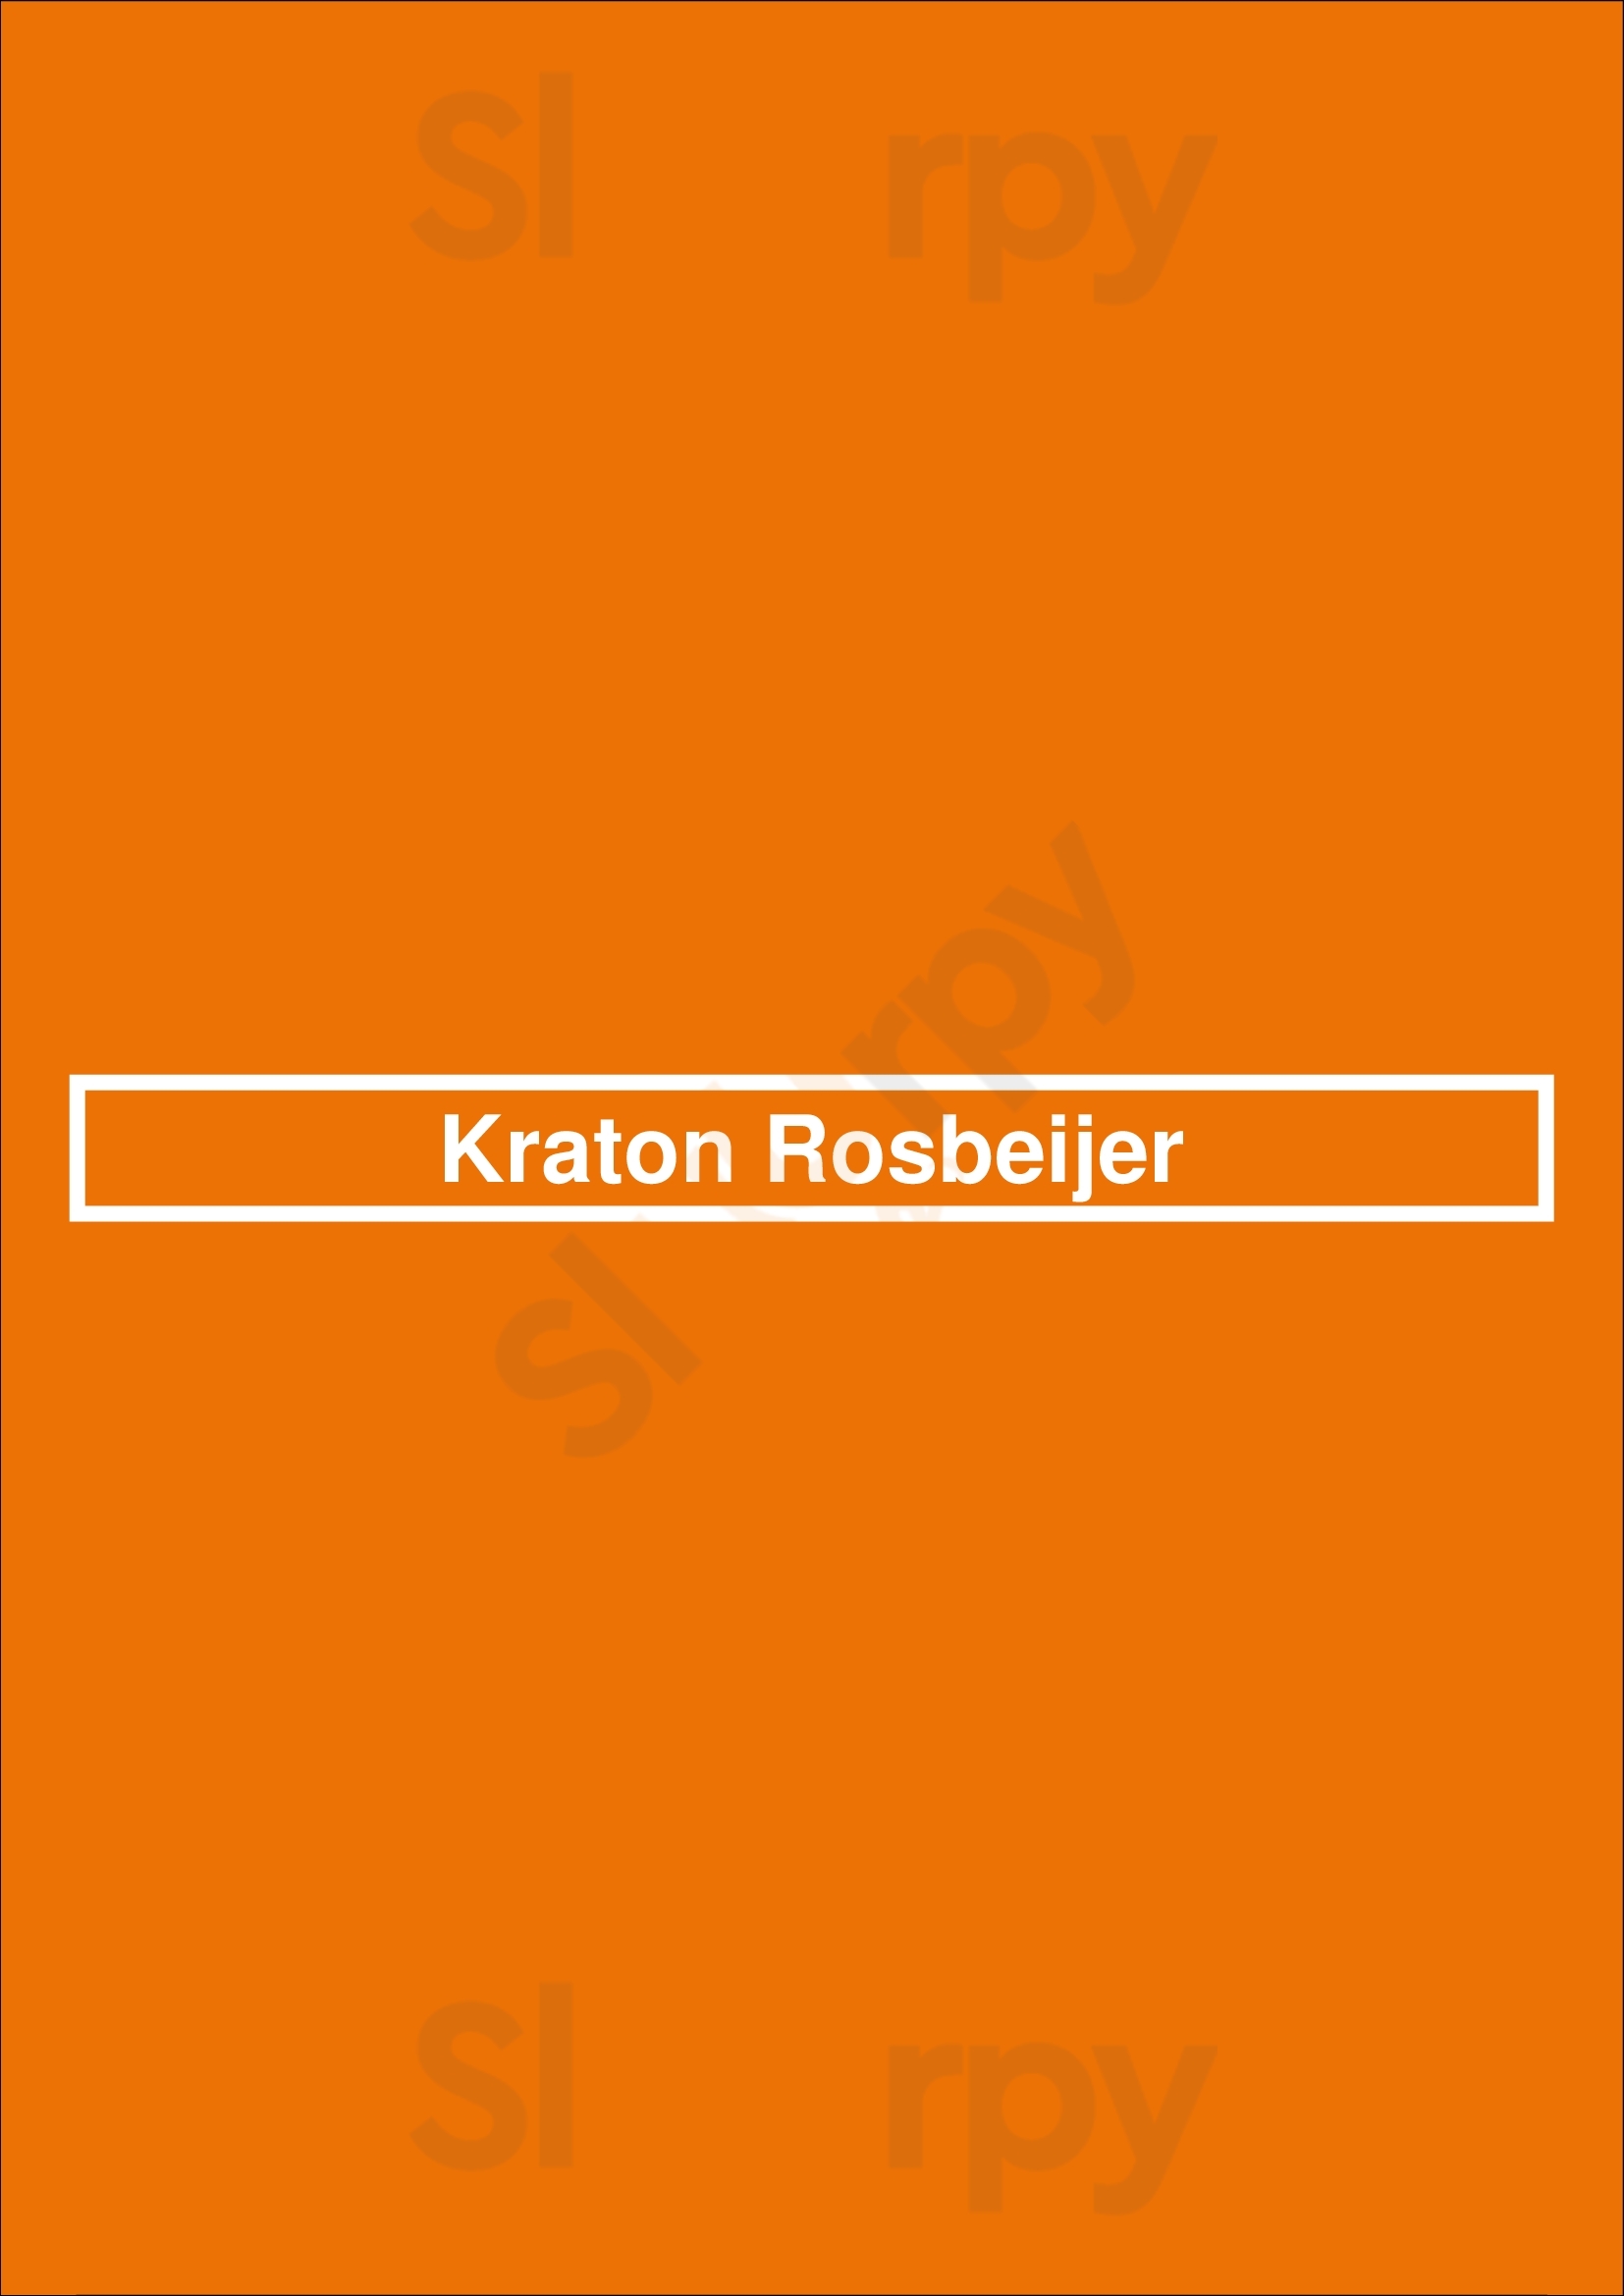 Kraton Rosbeijer Leusden Menu - 1